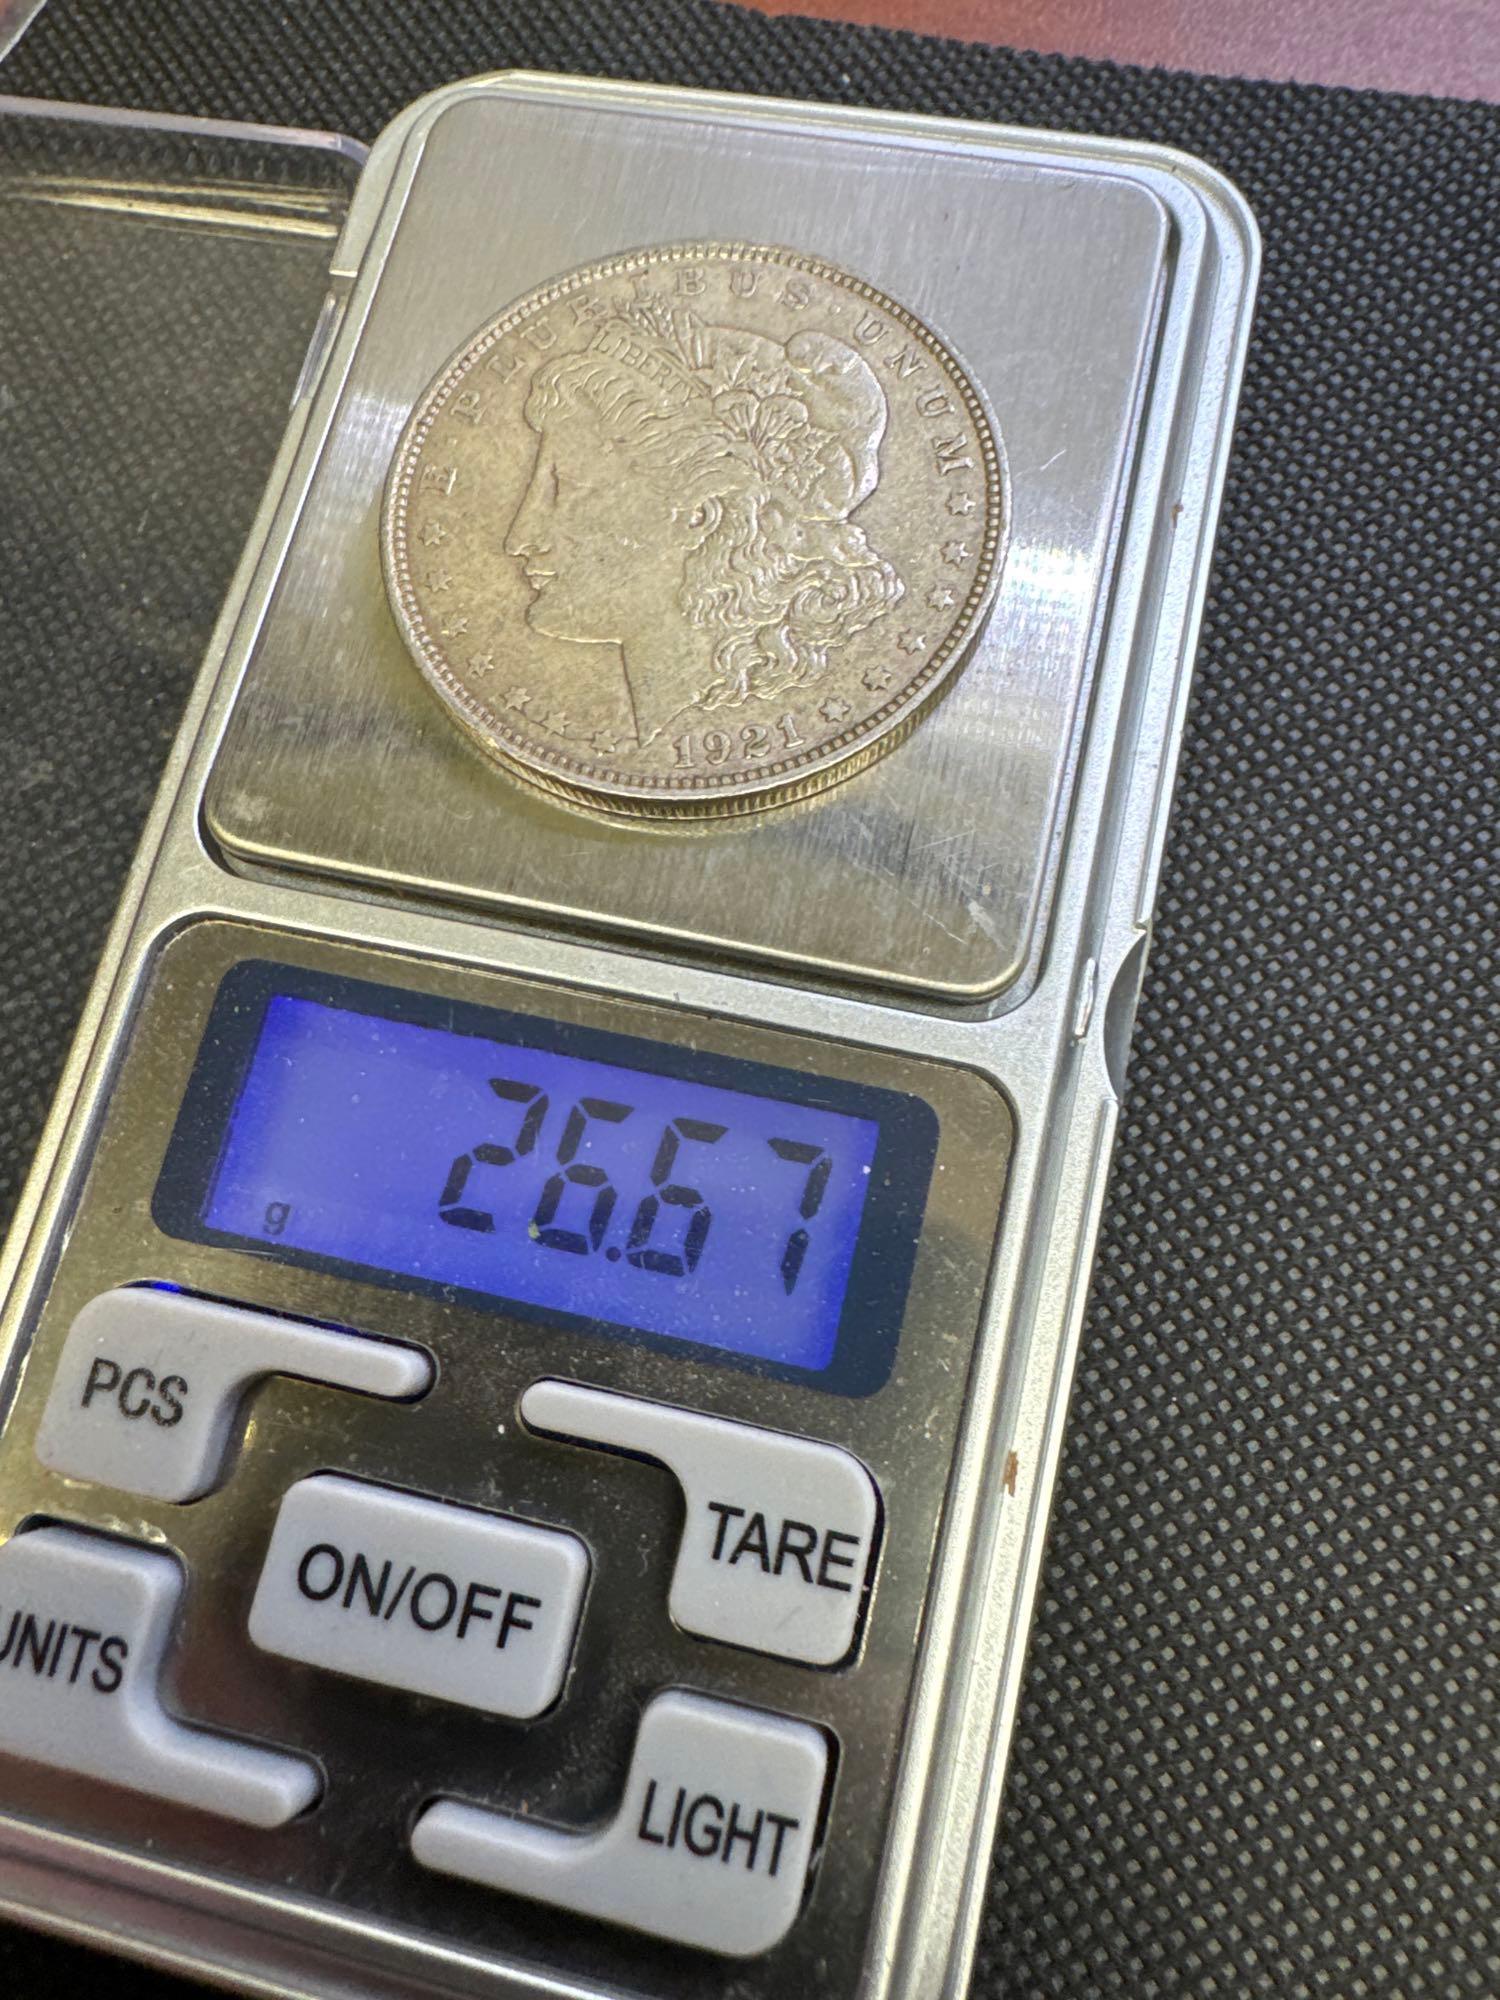 3x 1921-D Morgan Silver Dollar 90% Silver Coins